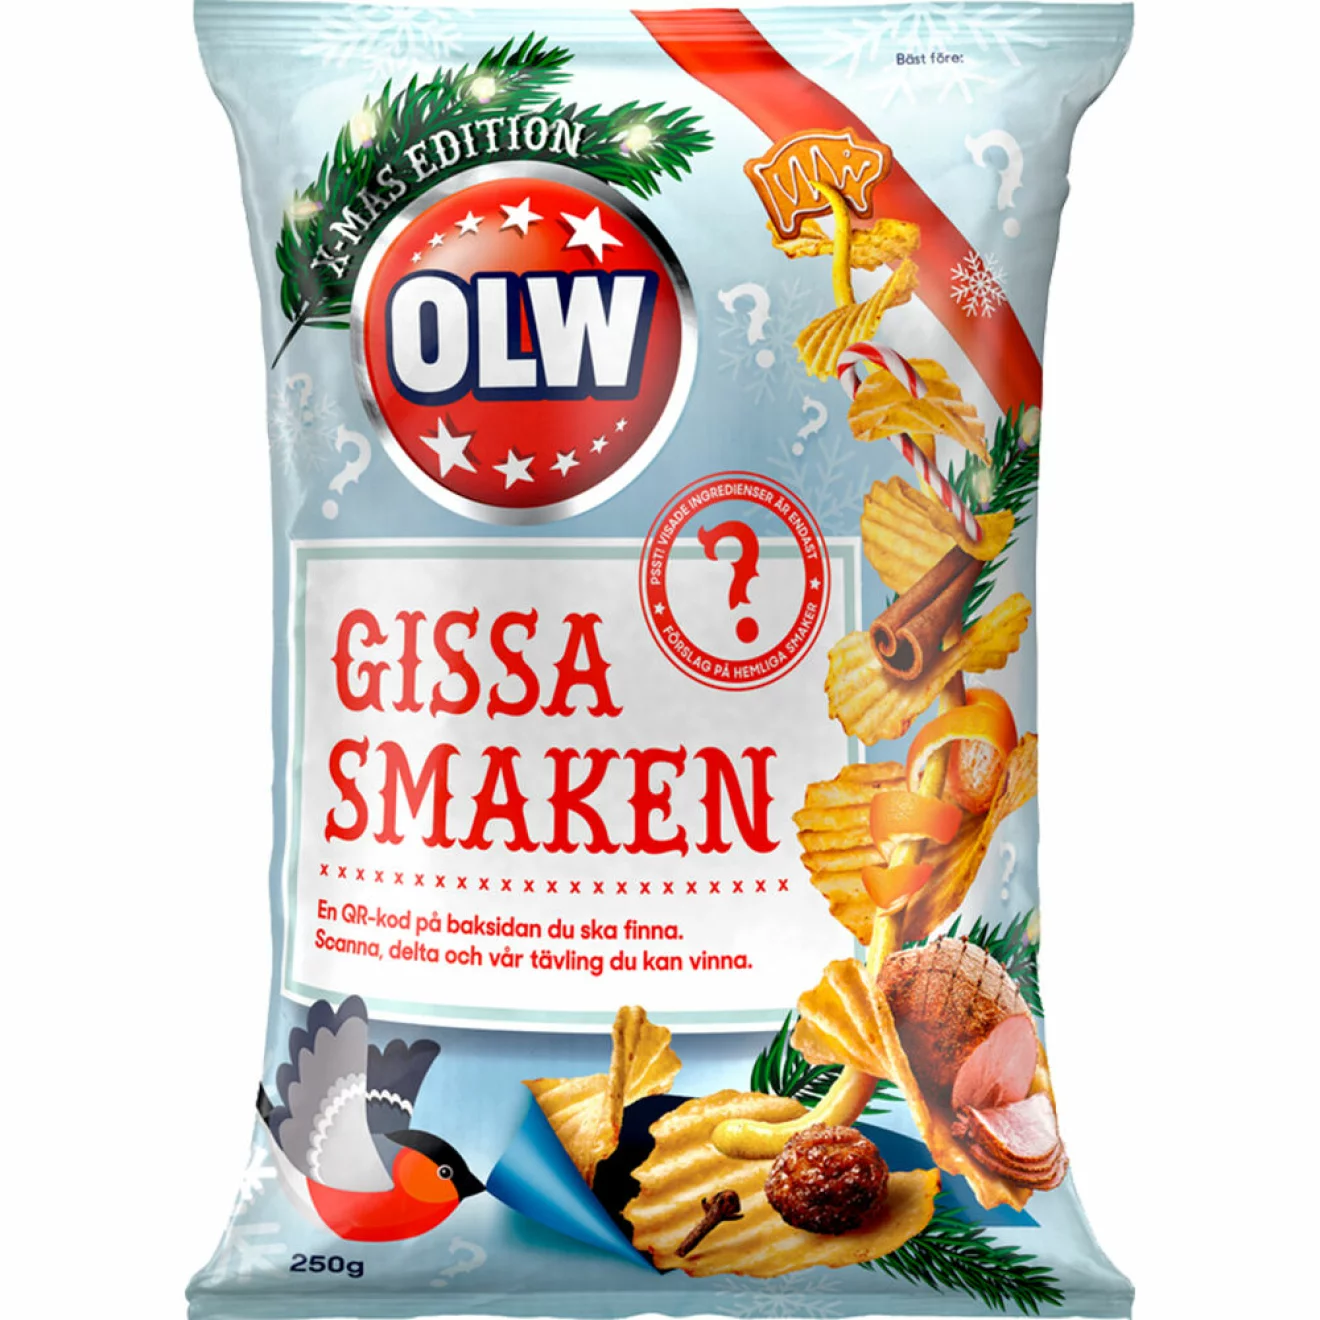 OLW:s limited edition chips – vad smakar de egentligen? Gissa och vinn mera snacks!